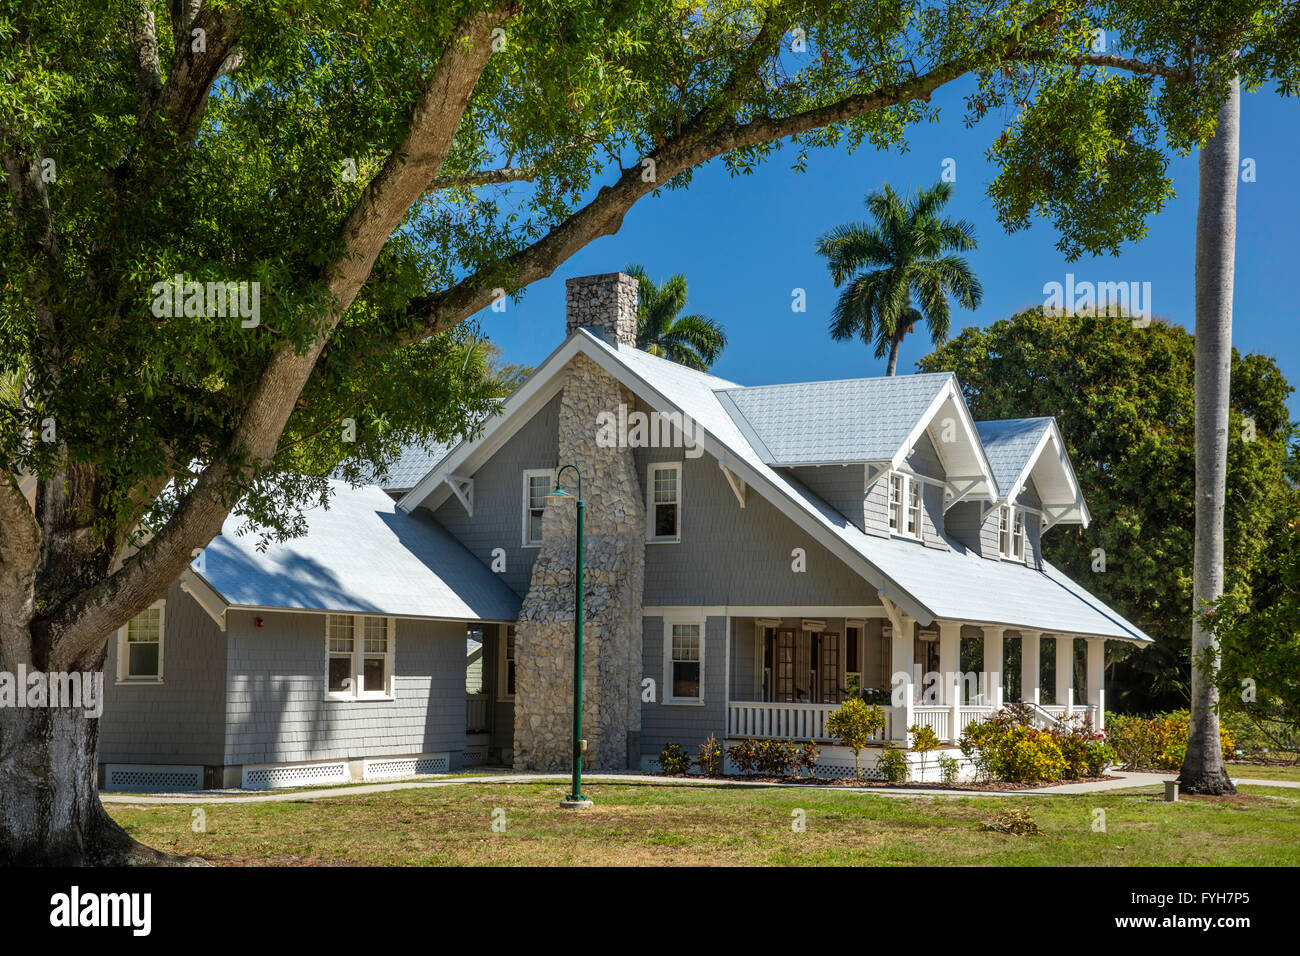 Maison d'hiver de Henry Ford, constructeur automobile Ft Myers, Floride, USA Banque D'Images